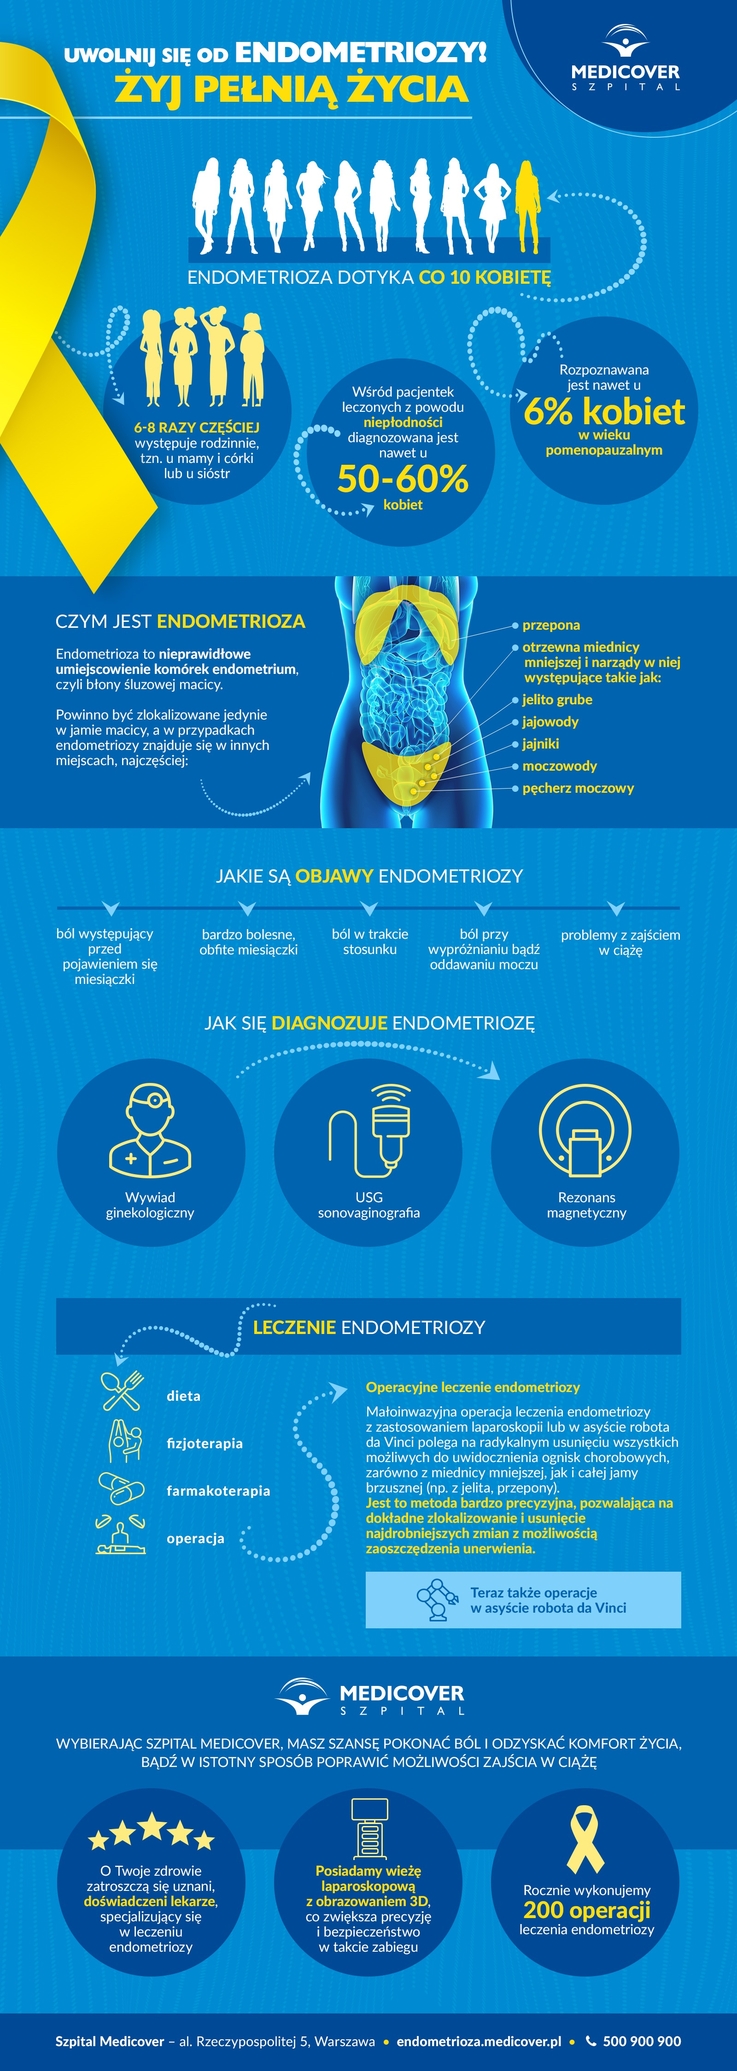 Medicover - Endometrioza - infografika